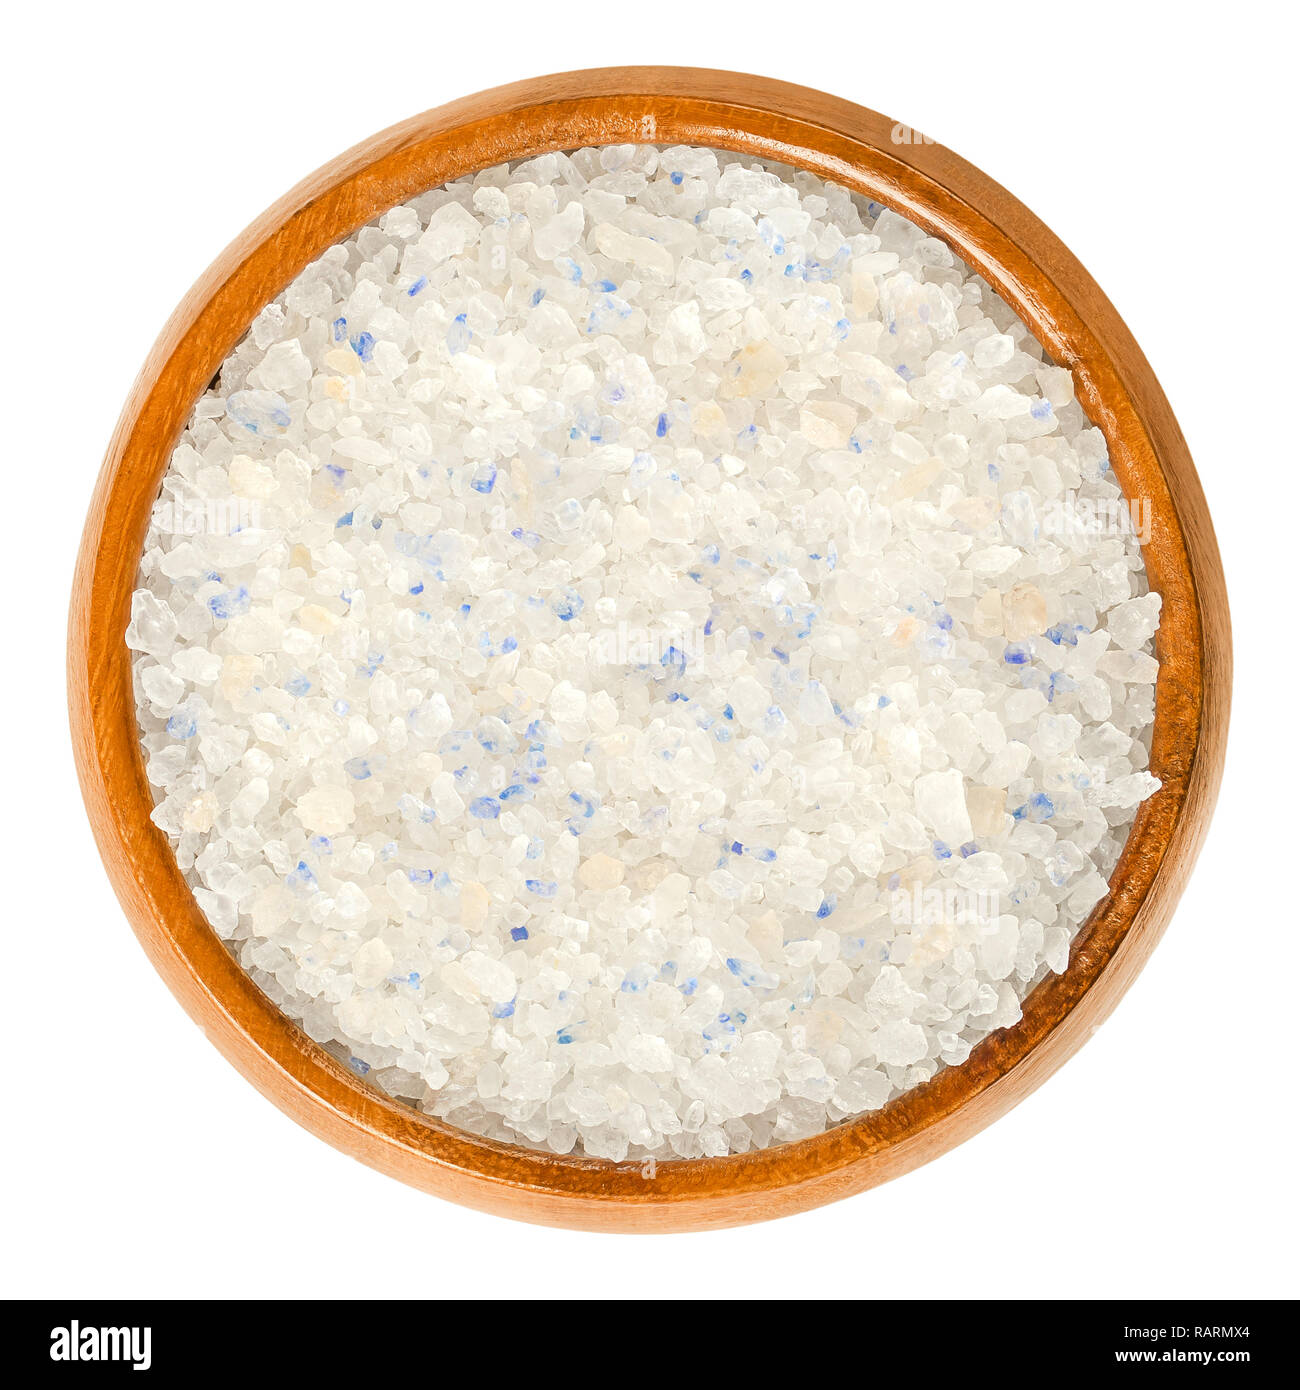 Persisch Blau Salz in Houten. Feine Steinsalz aus dem Iran. Blaue Farbe auftritt während der Formung der kristallinen Struktur, durch eine optische Täuschung verursacht. Stockfoto